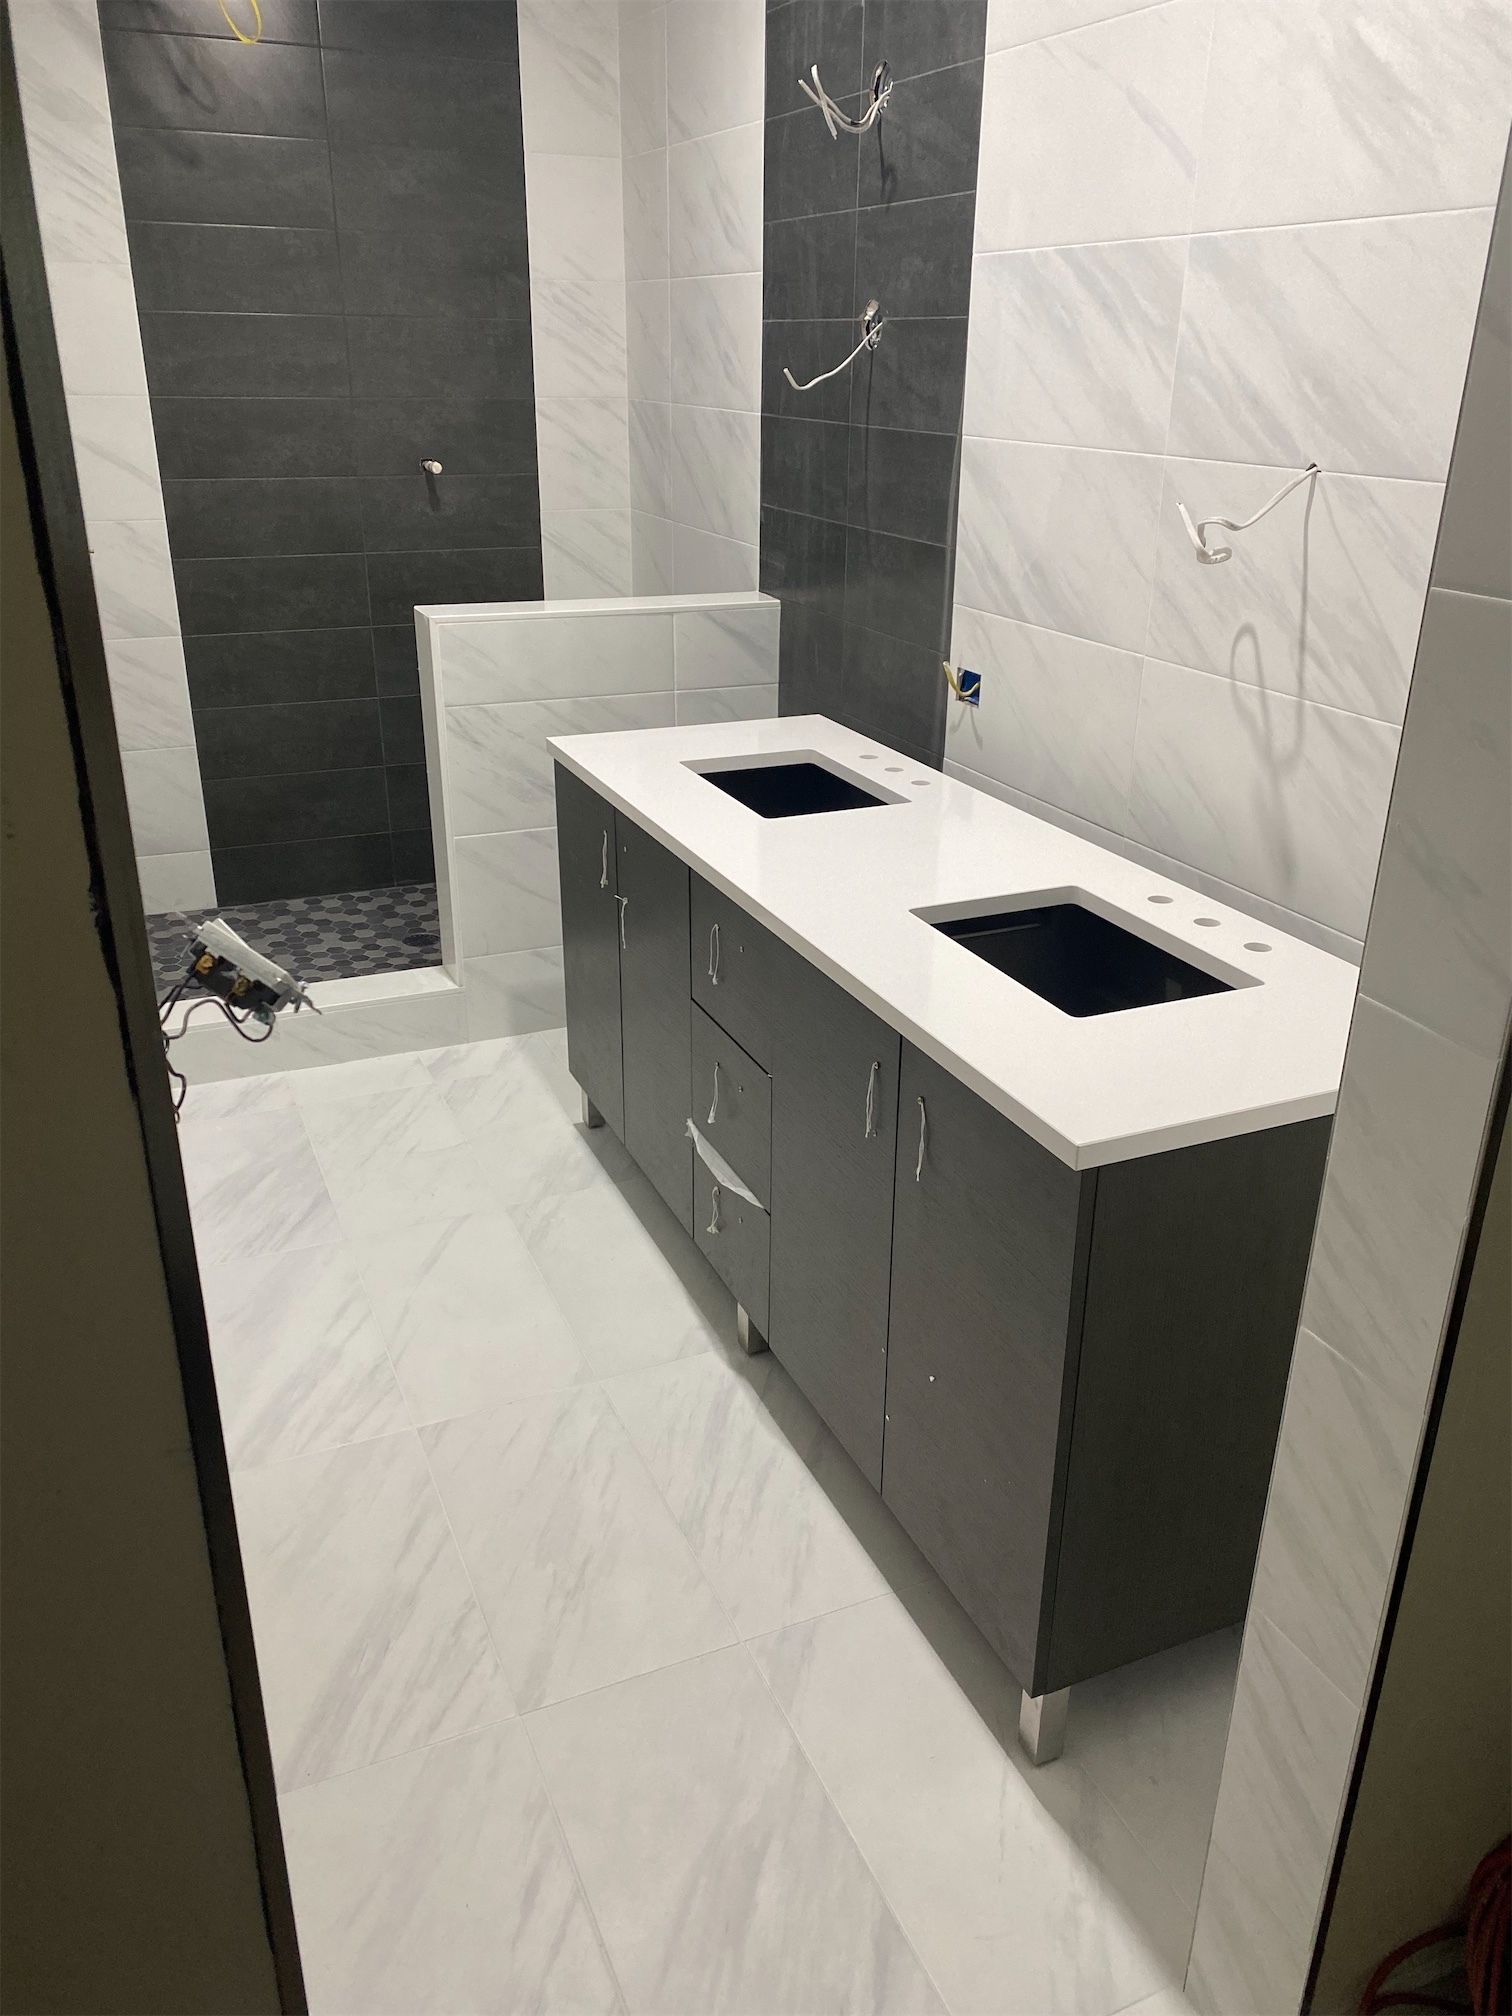 Quartz Bathroom Tile